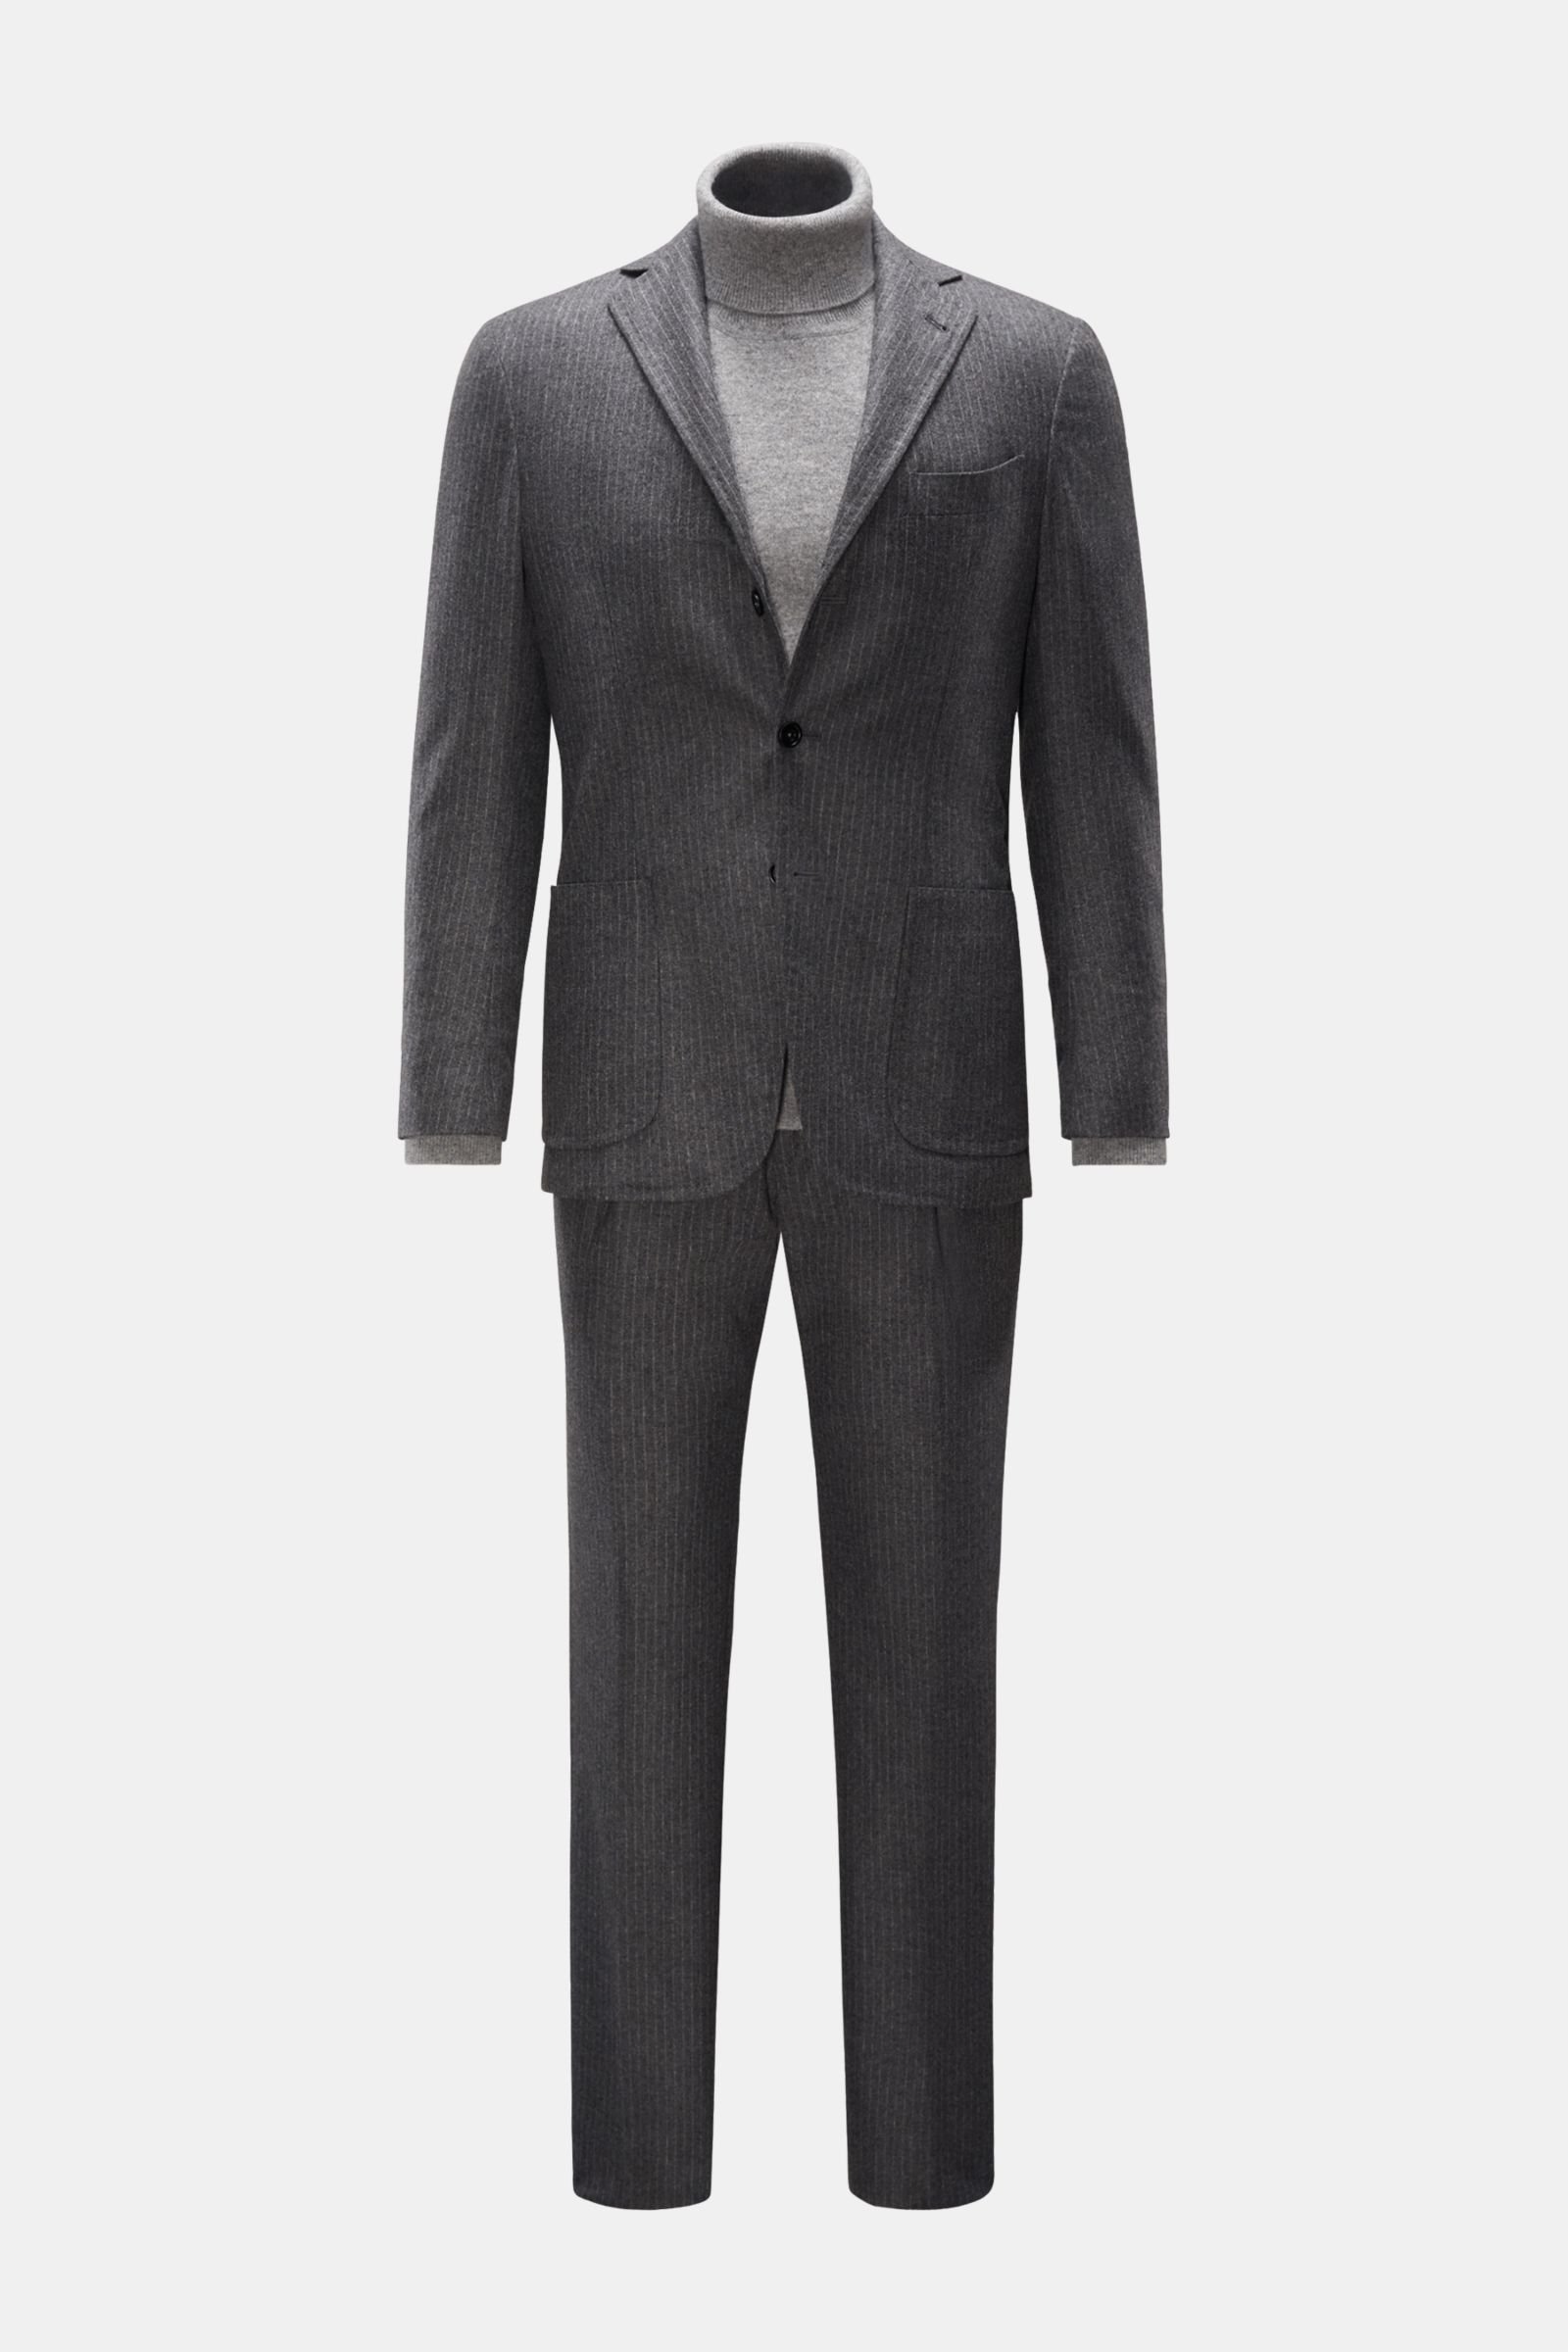 Anzug grau/weiß gestreift